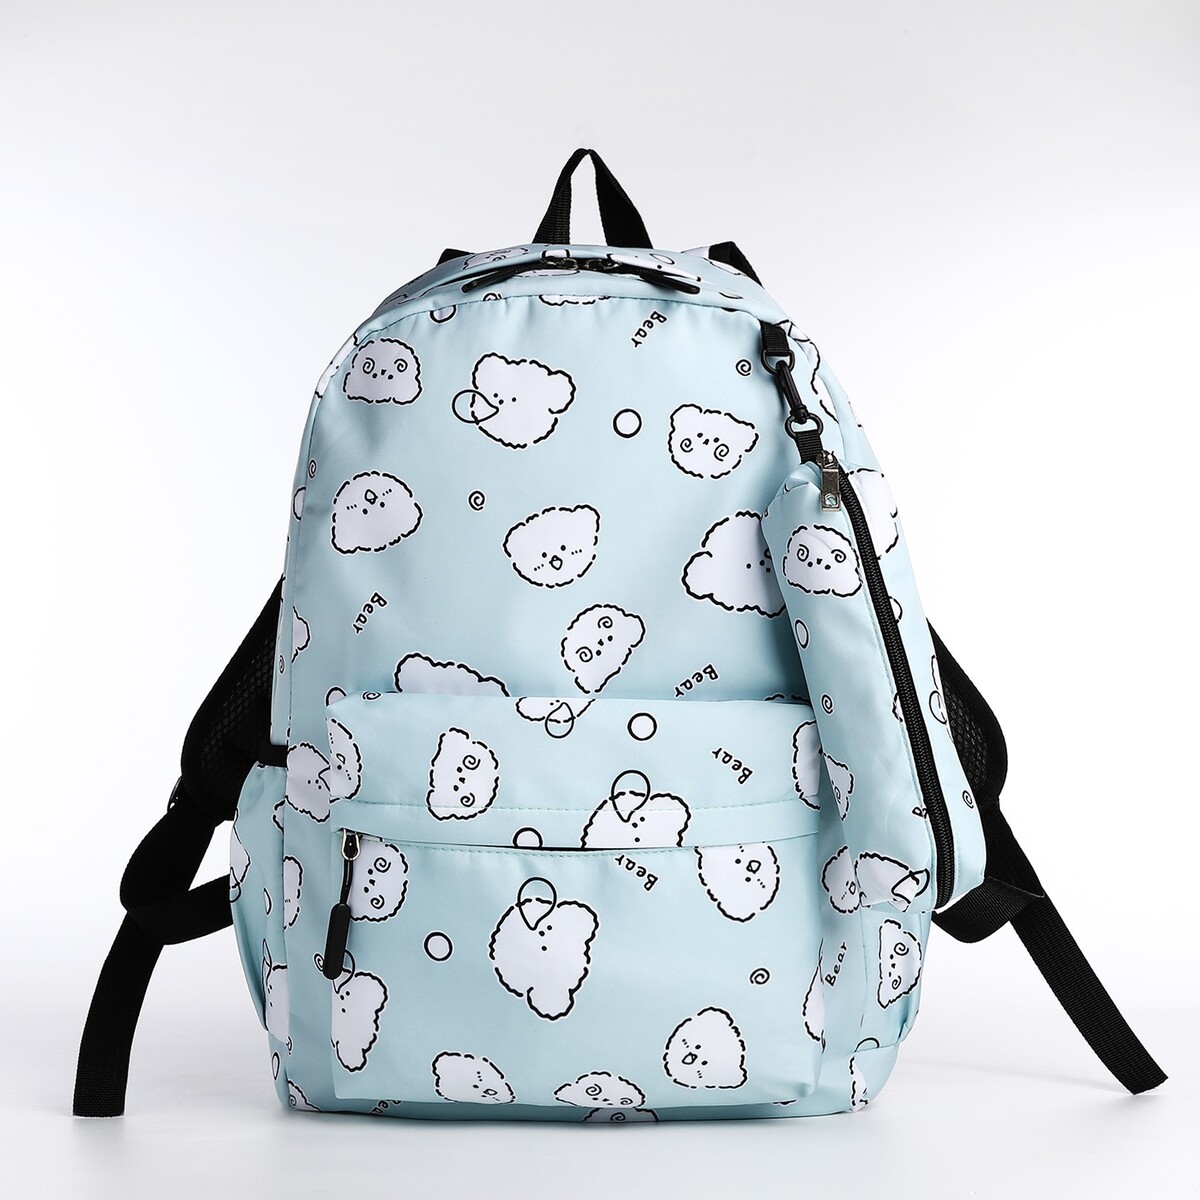 Набор рюкзак школьный из текстиля на молнии, 3 кармана, пенал, цвет бирюзовый рюкзак школьный из текстиля 3 кармана бирюзовый